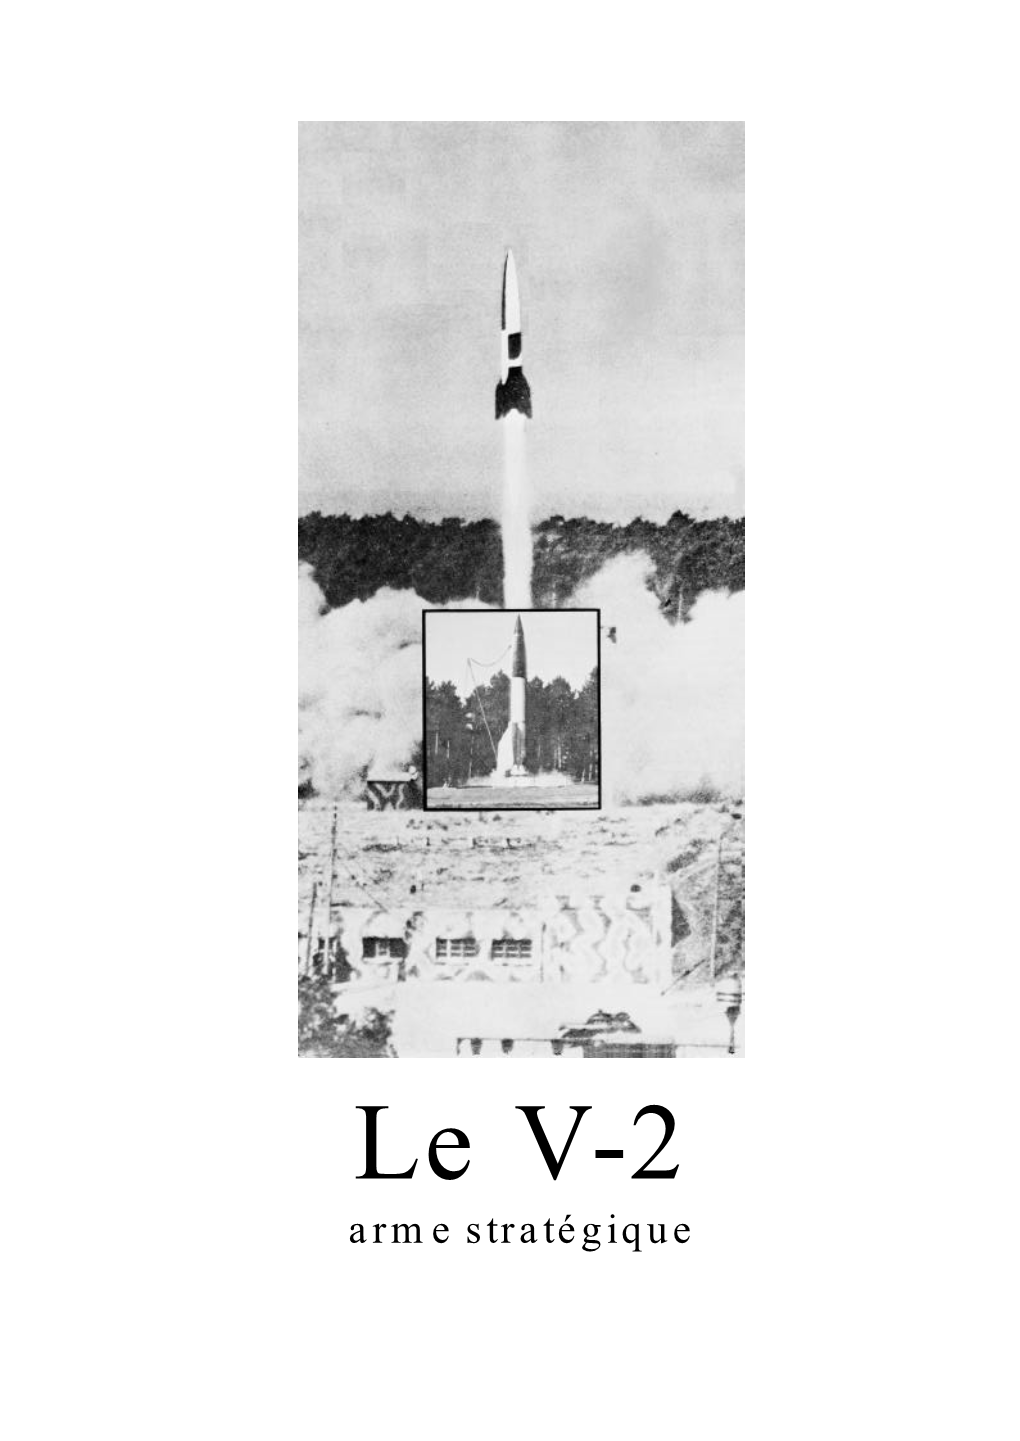 Le V-2 Arme Stratégique D’Un Obus Qui Serait Capable De Bombarder La Société Verein Für L’Ennemi À Plus De 200 Kilomètres (Tir Balistique Hors Atmosphère)